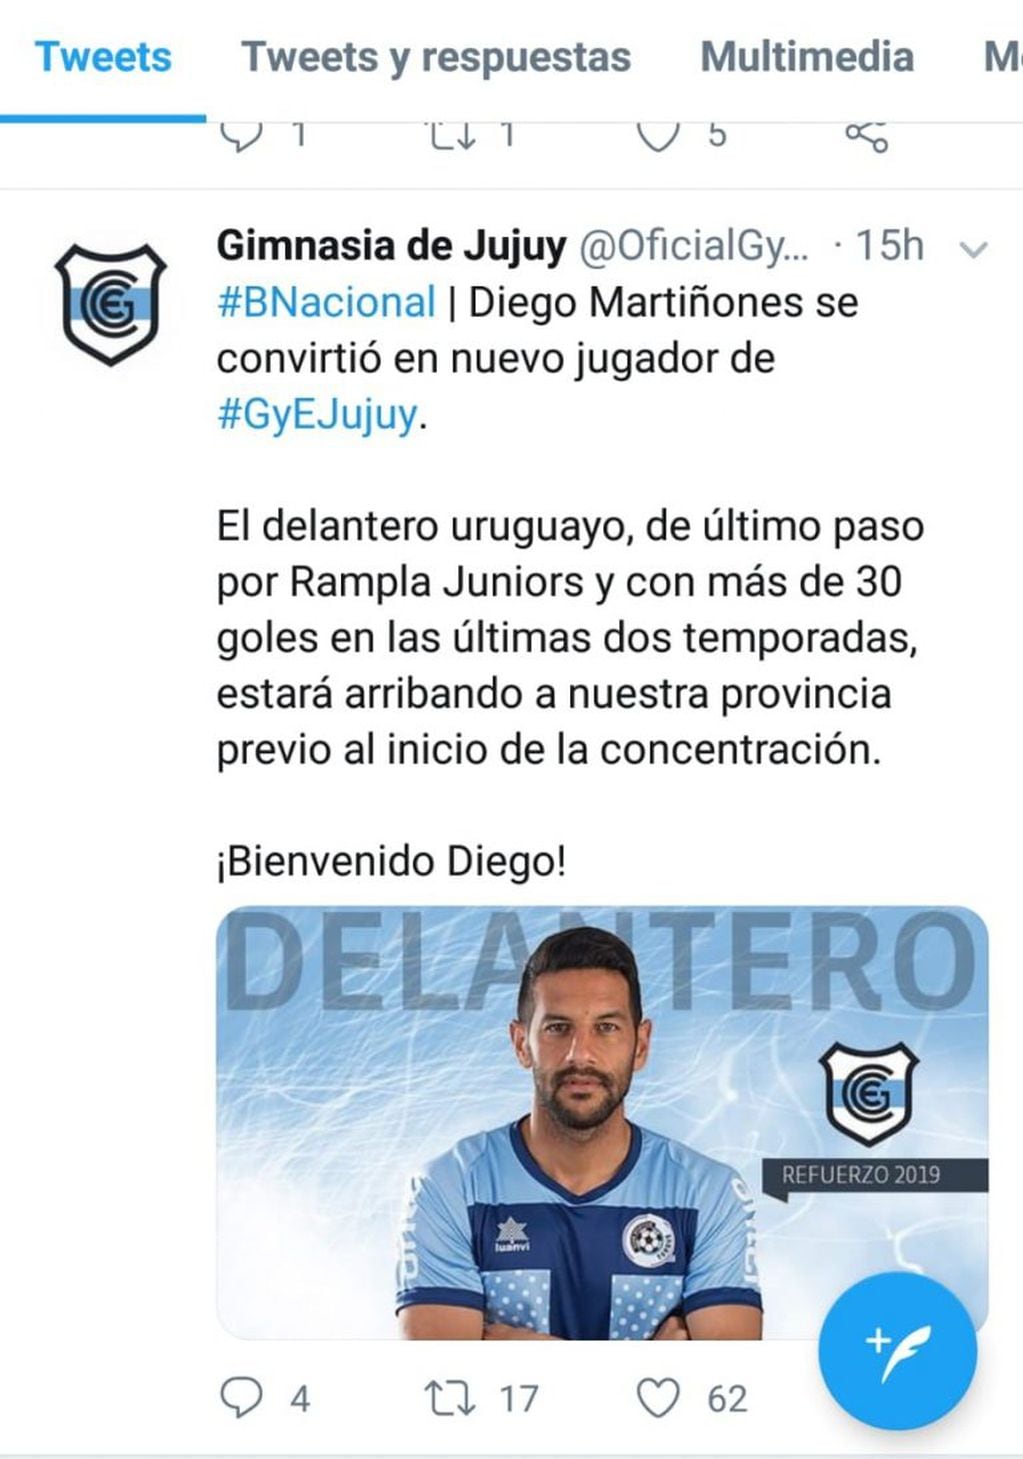 Twitter de la cuenta oficial de Gimnasia de Jujuy